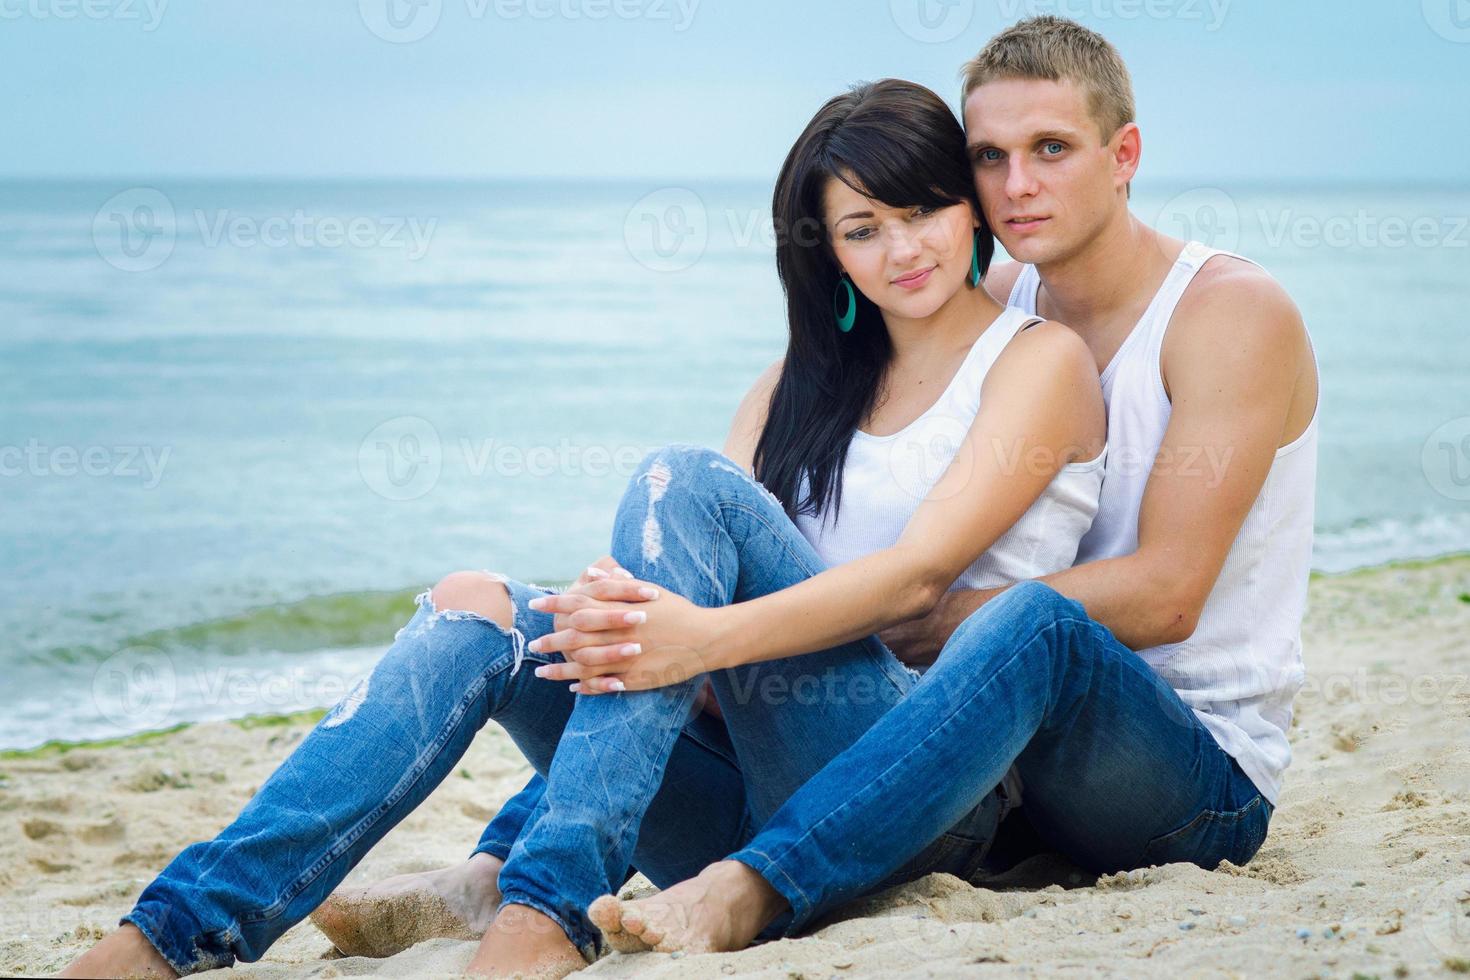 cara e uma garota de jeans e camiseta branca na praia foto